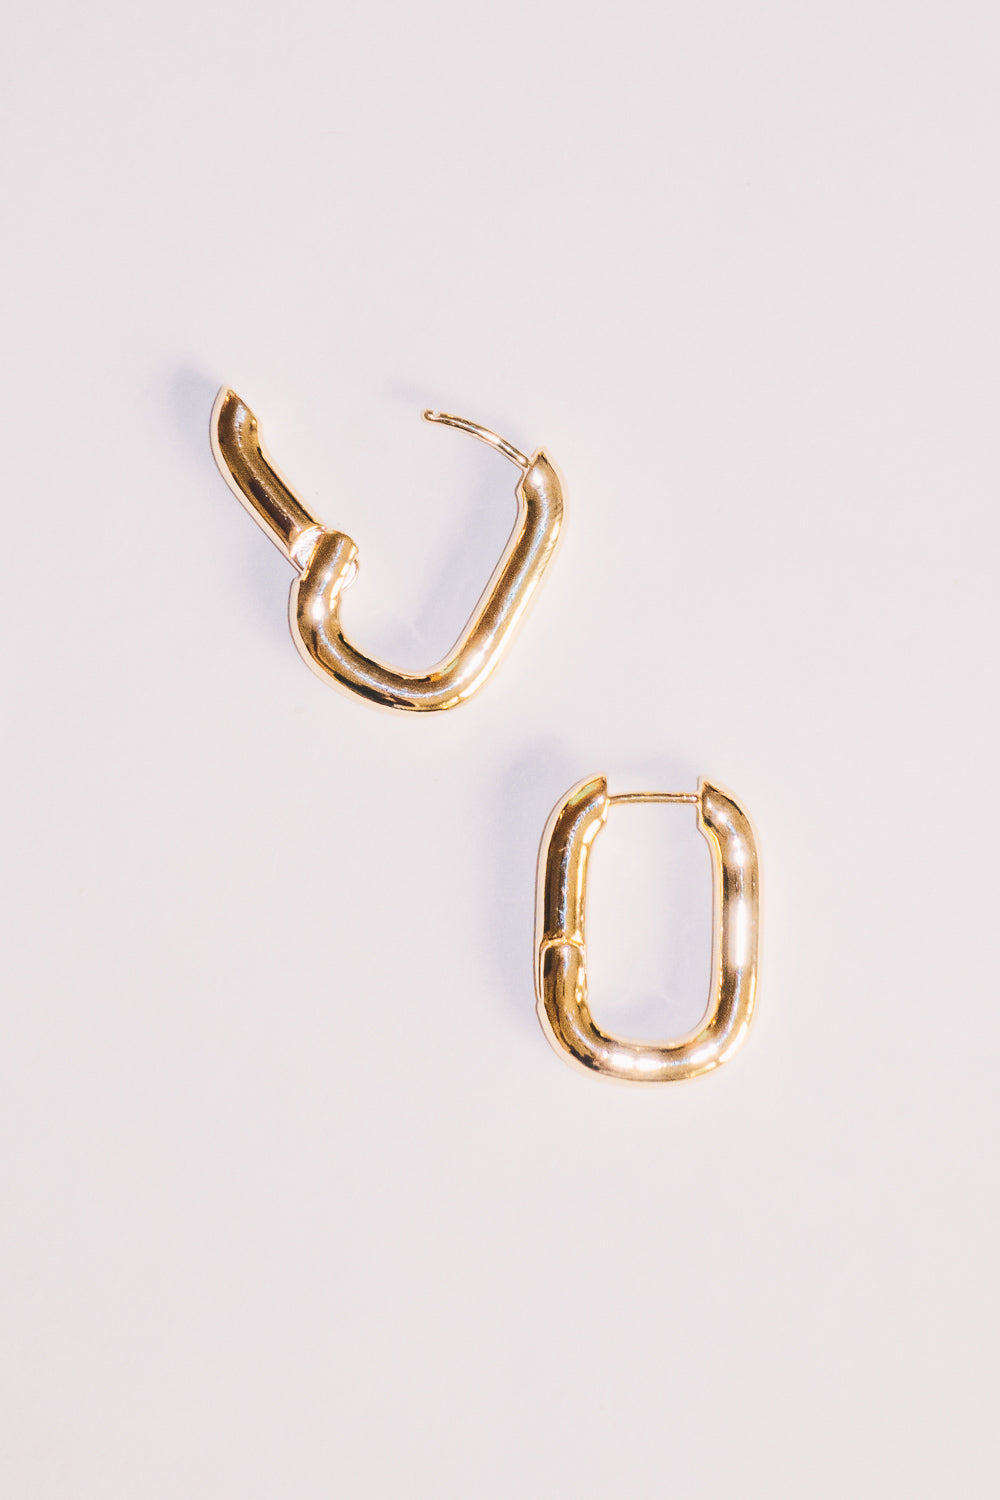 gold huggie hoop earrings with opening